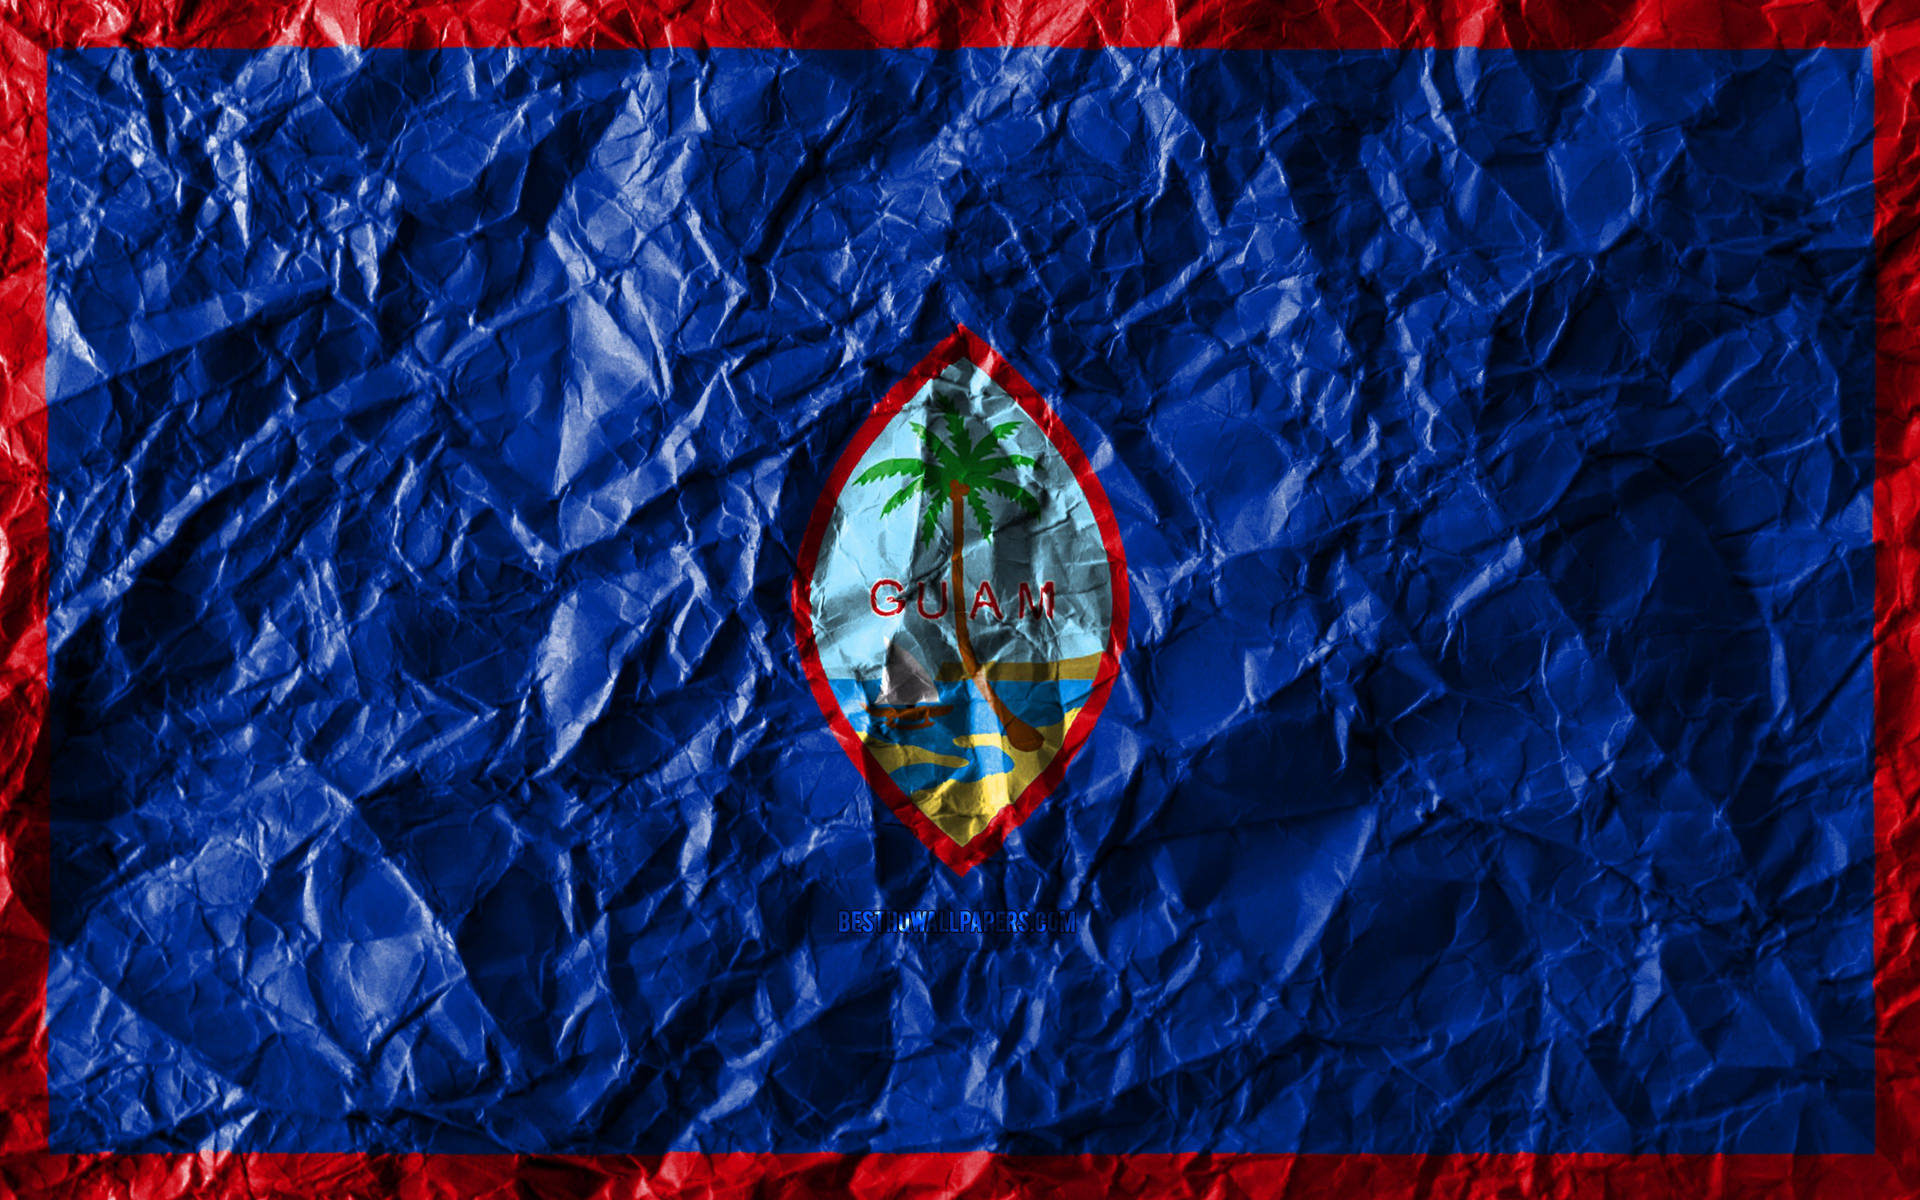 Krumplet Guam Flag Wallpaper